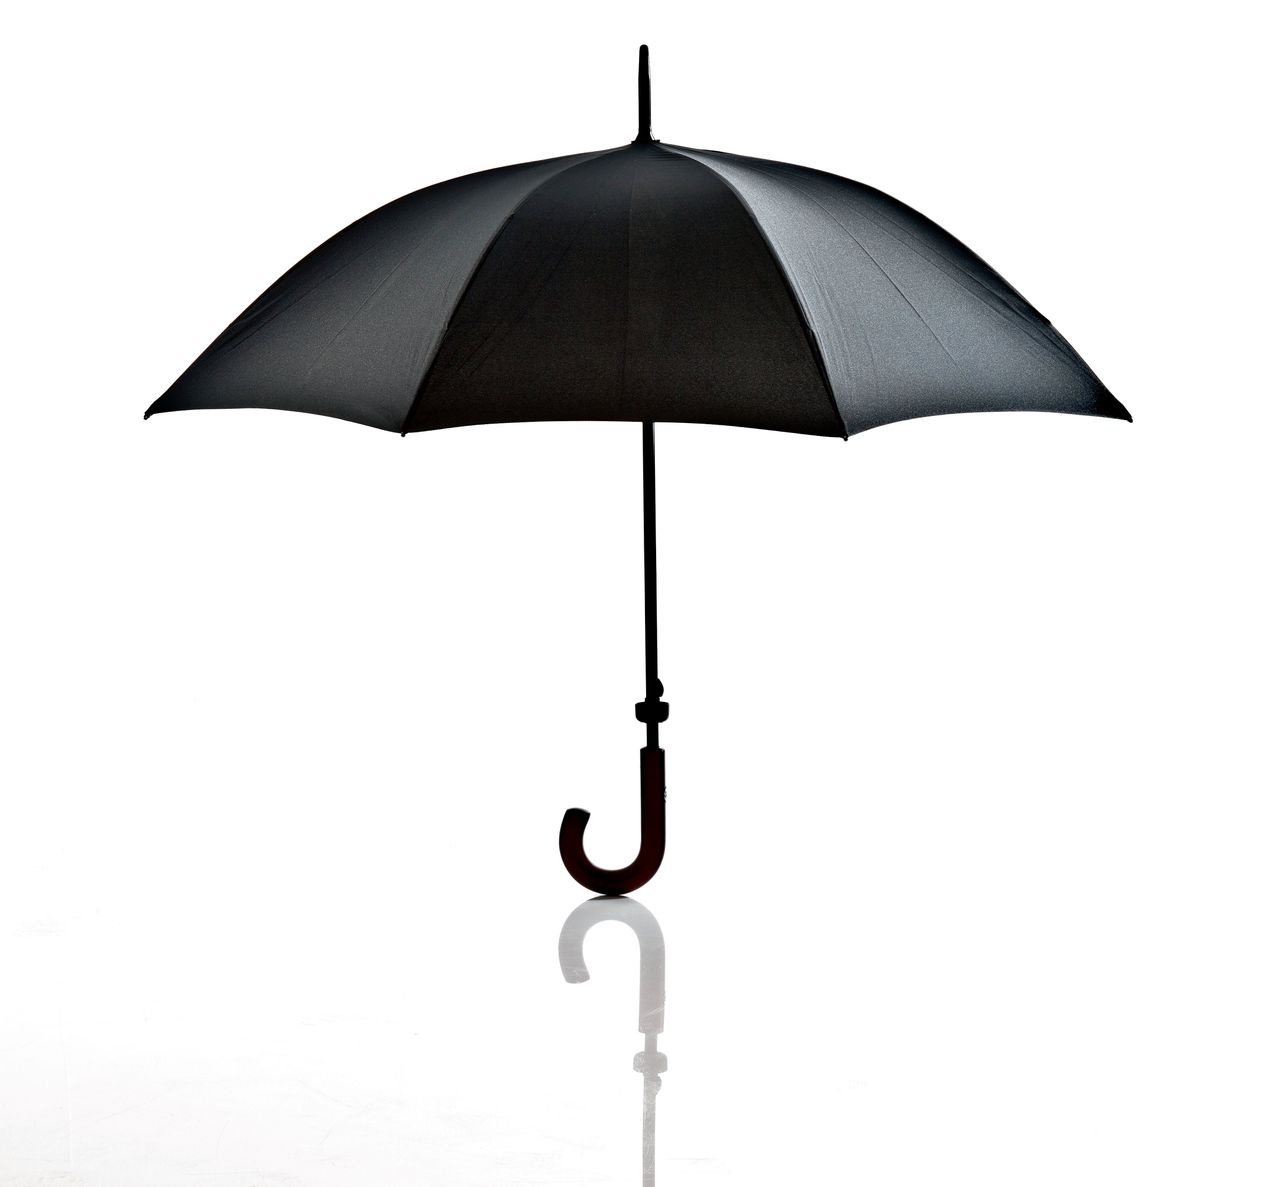 een paraplu ons in de steek kan laten, toont de intieme relatie tussen mens en ding - NRC